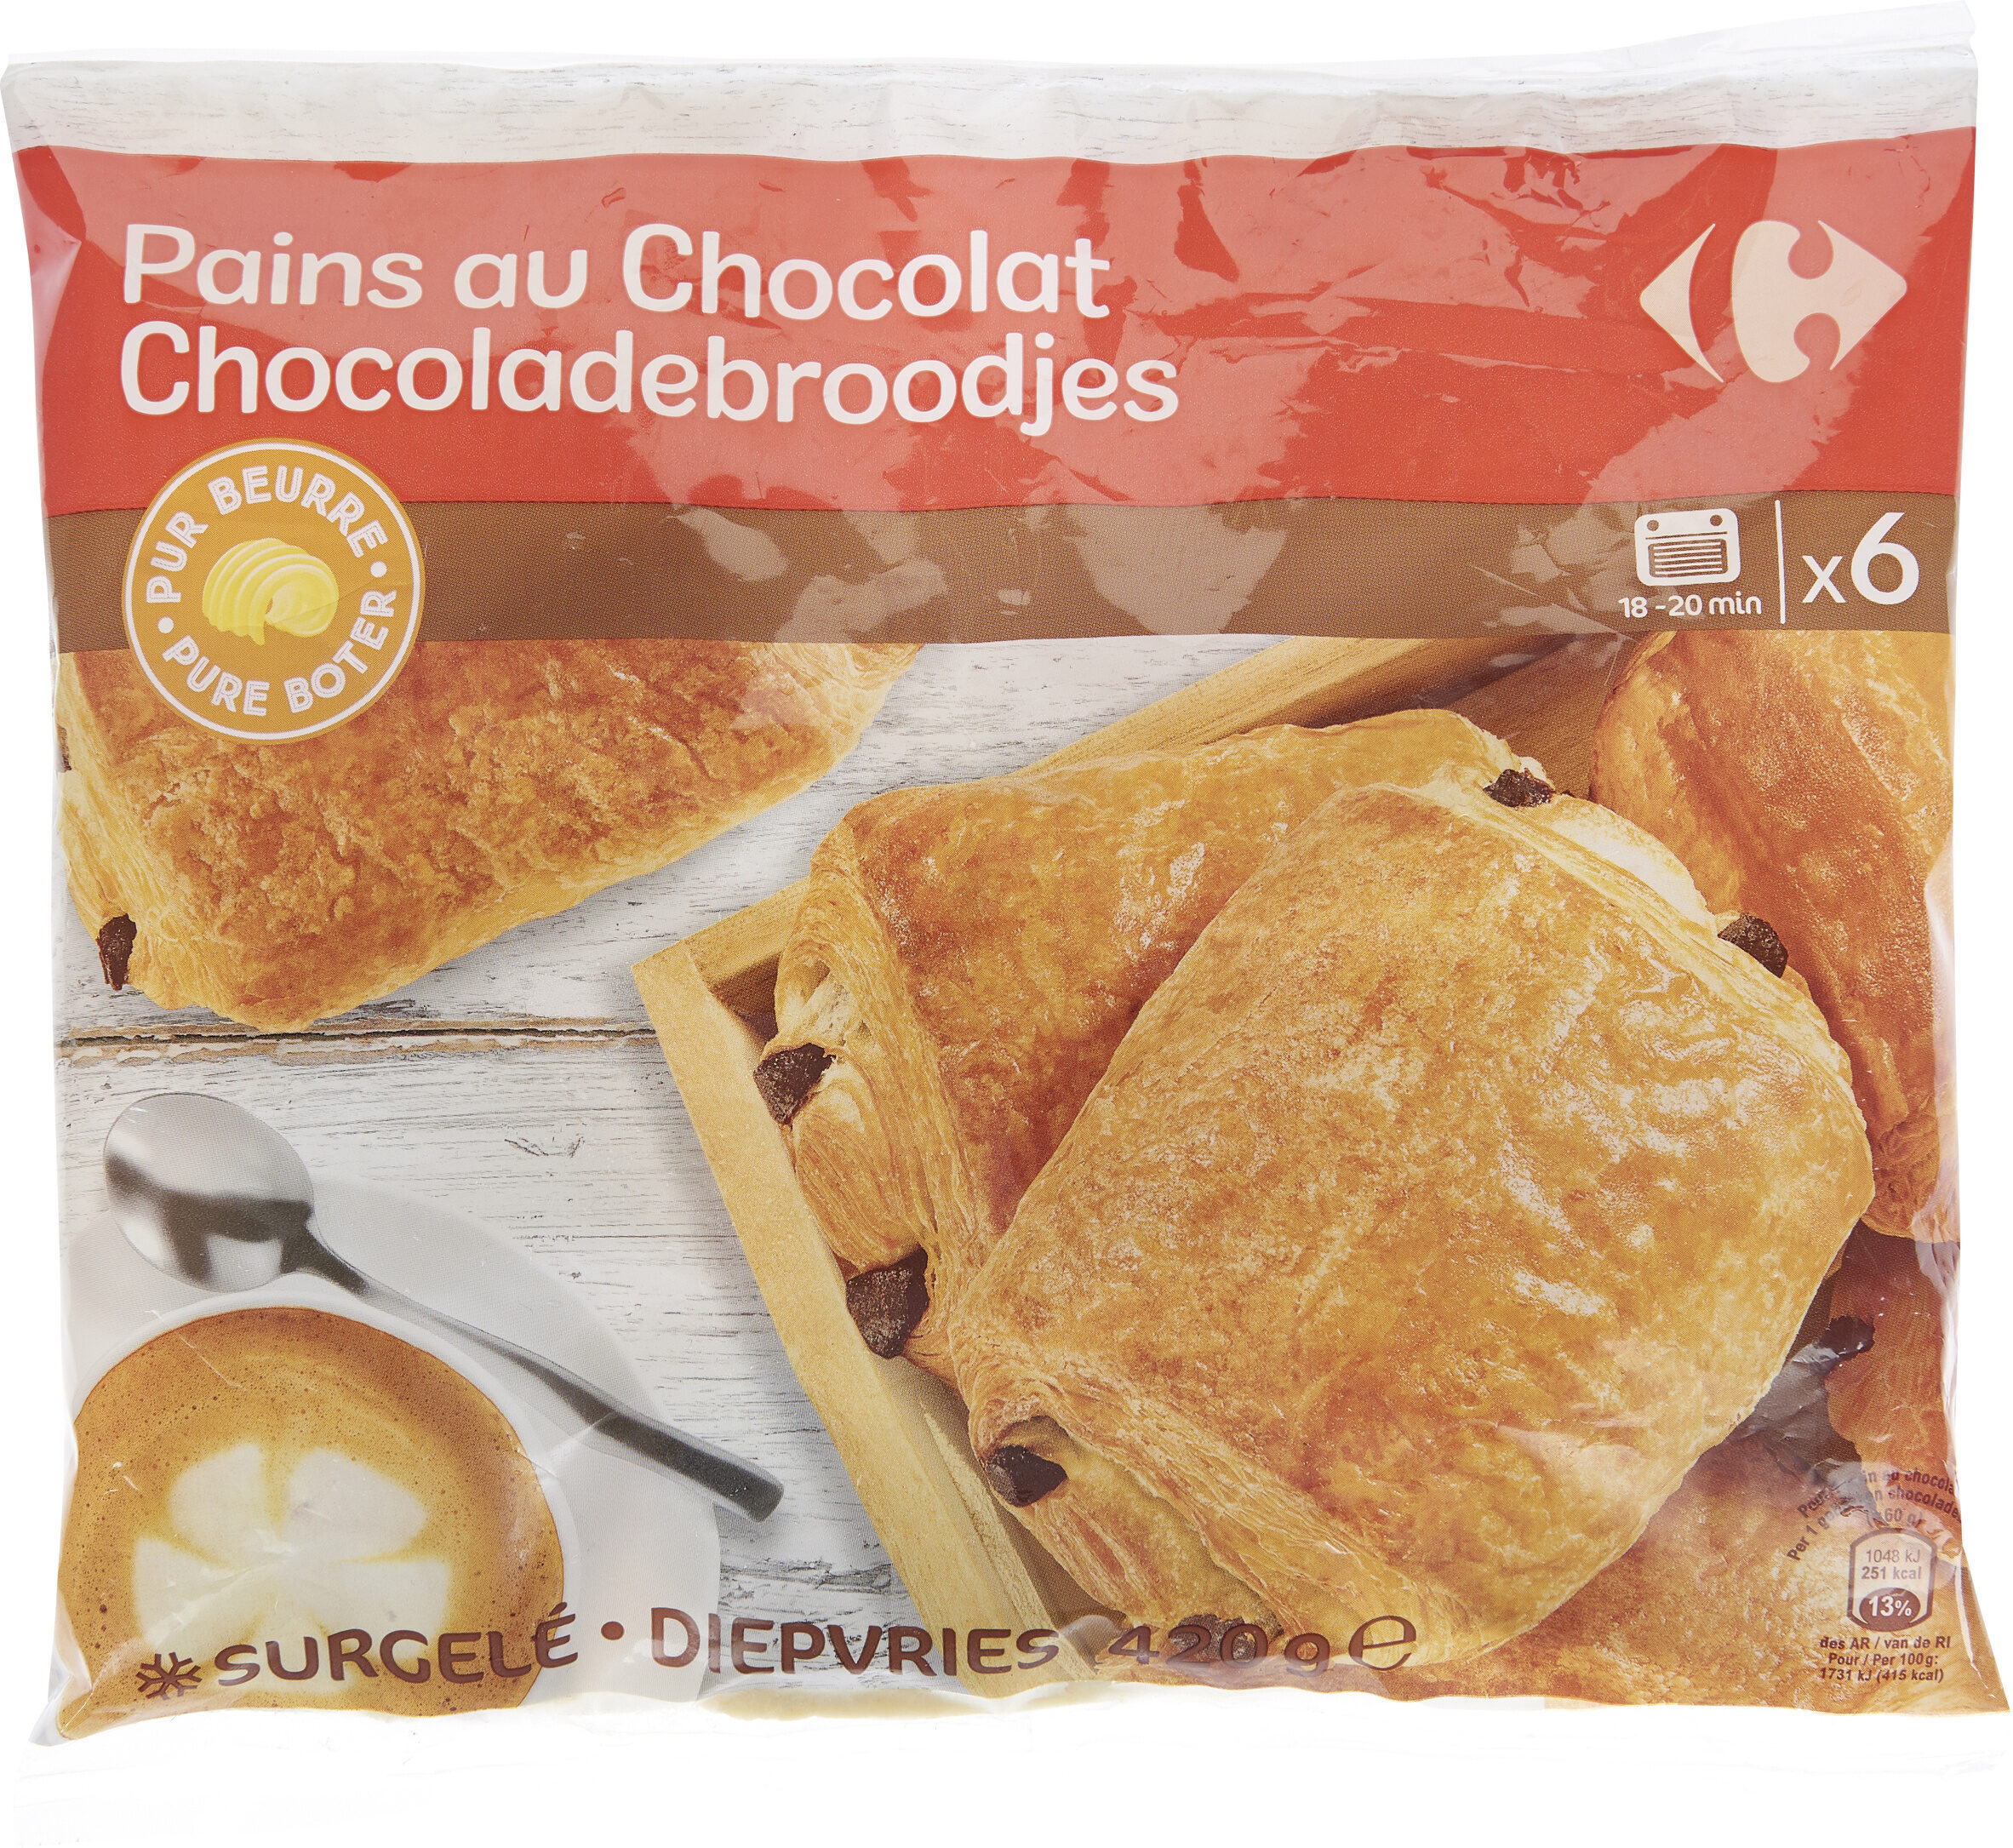 6 pains au chocolat pur beurre - Product - fr